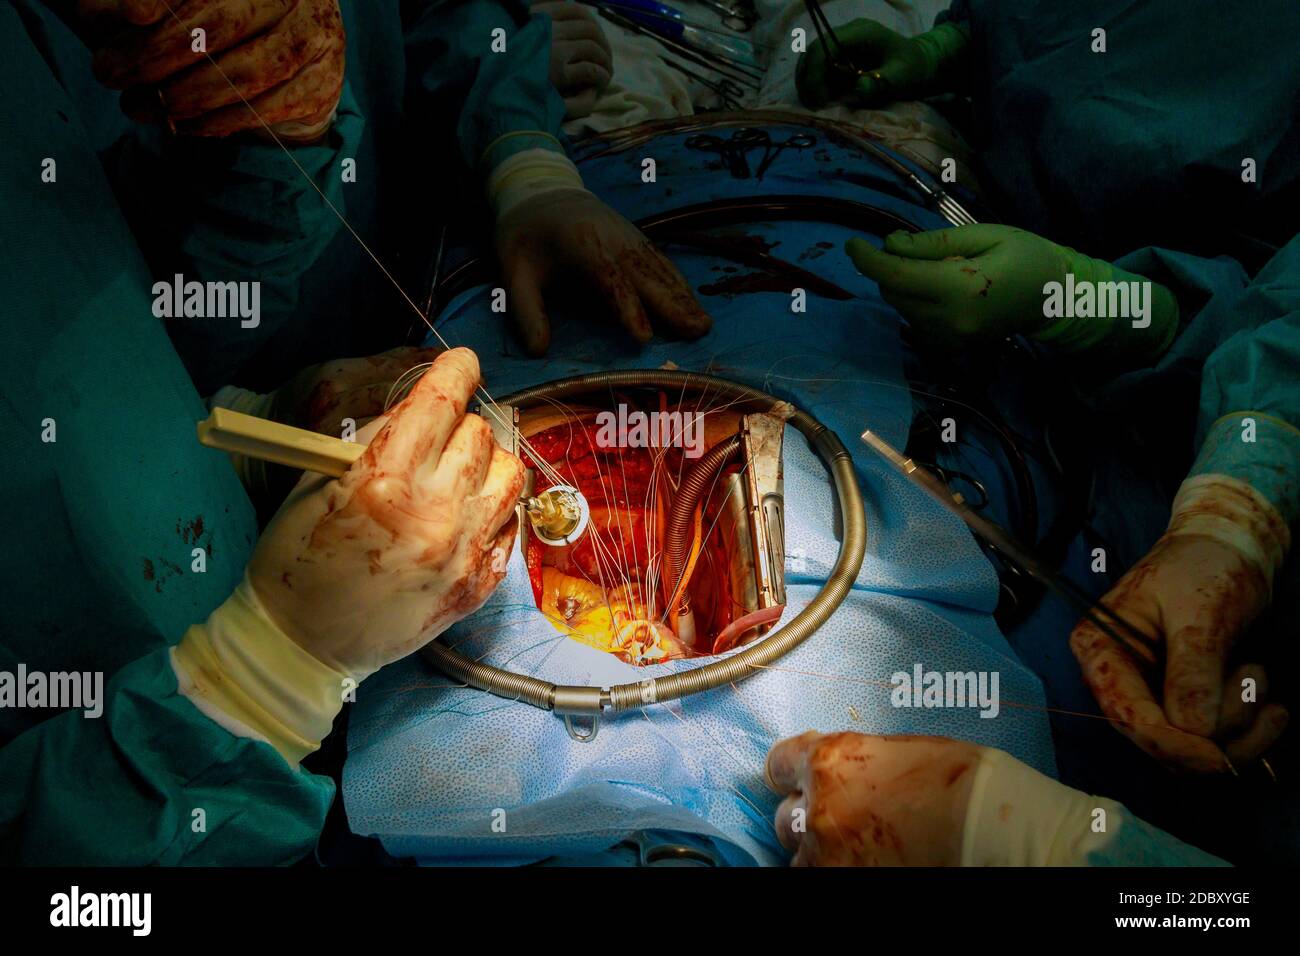 Aortenklappenersatz-Operation am menschlichen Herzen letzte Operation Nähte, die Prothese an der Aorta-Wand befestigen Stockfoto